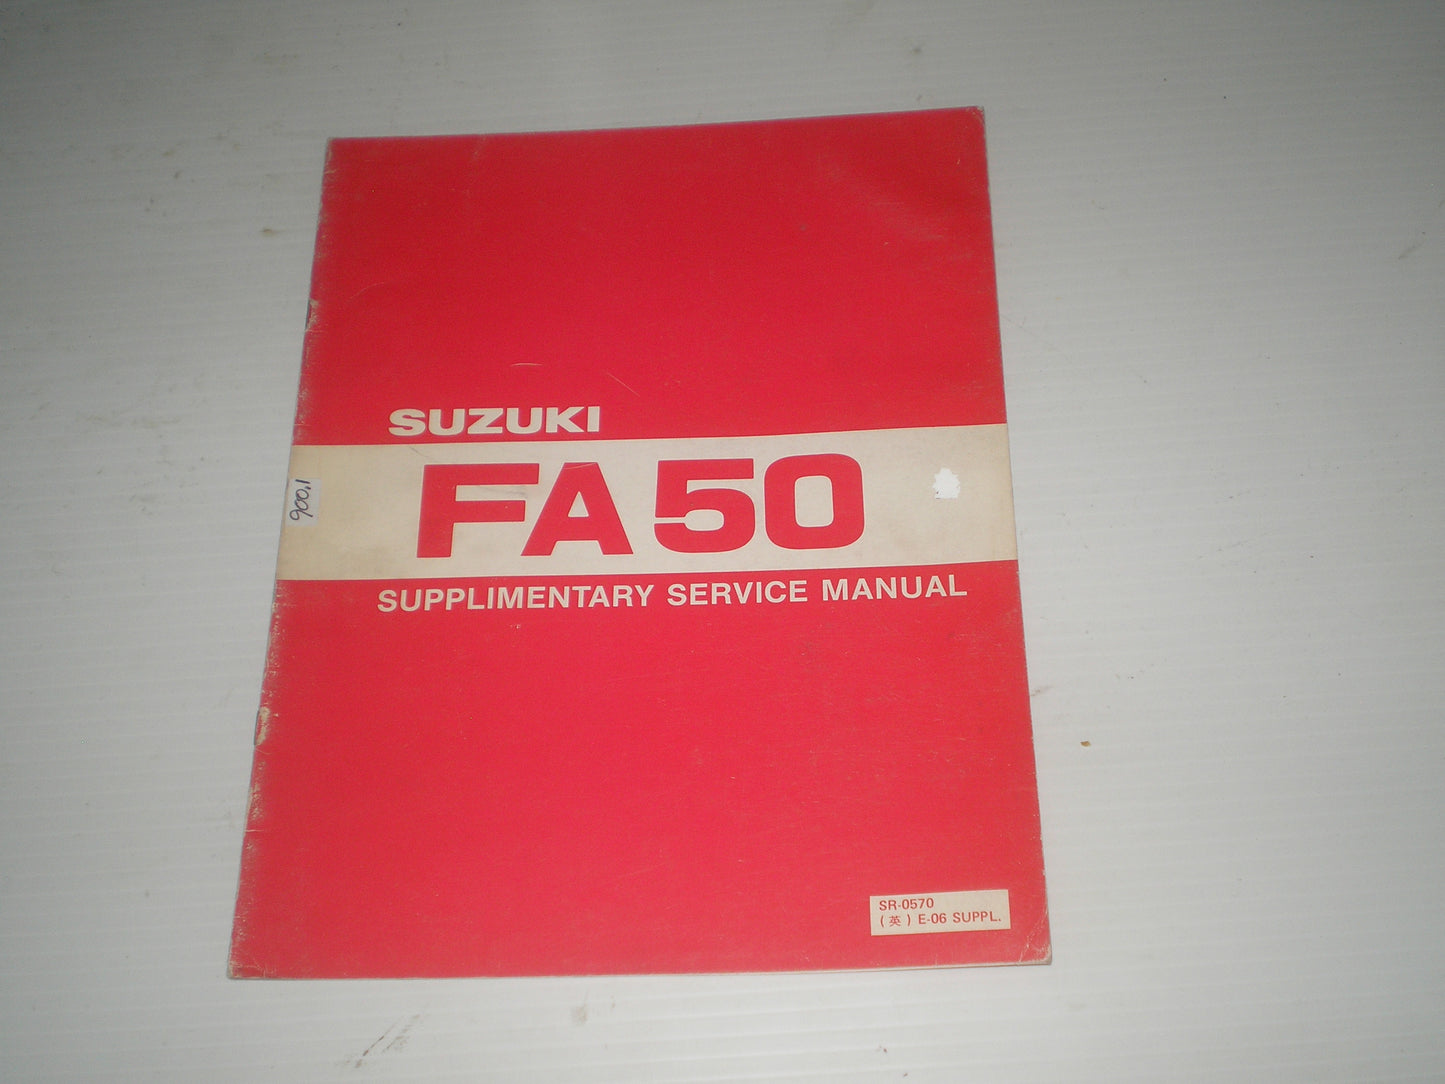 SUZUKI FA50 X  1981 Service Manual Supplement  SR-0570 E-06 SUPPL.   #1917